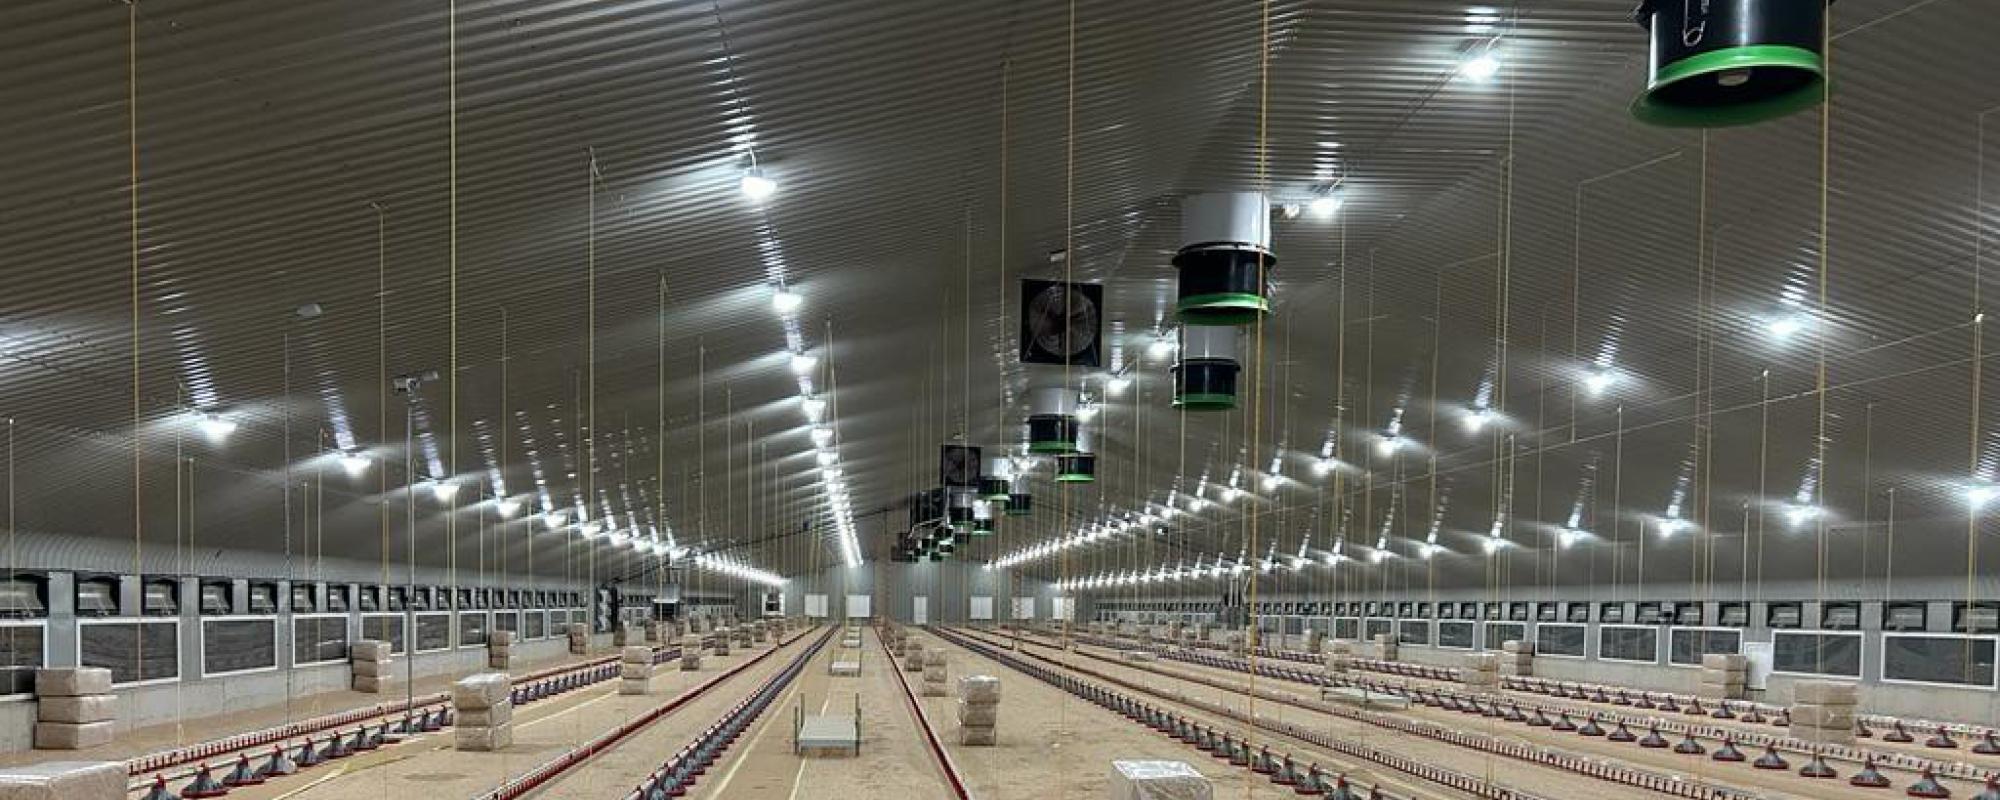 Iluminación agrícola para avicultura